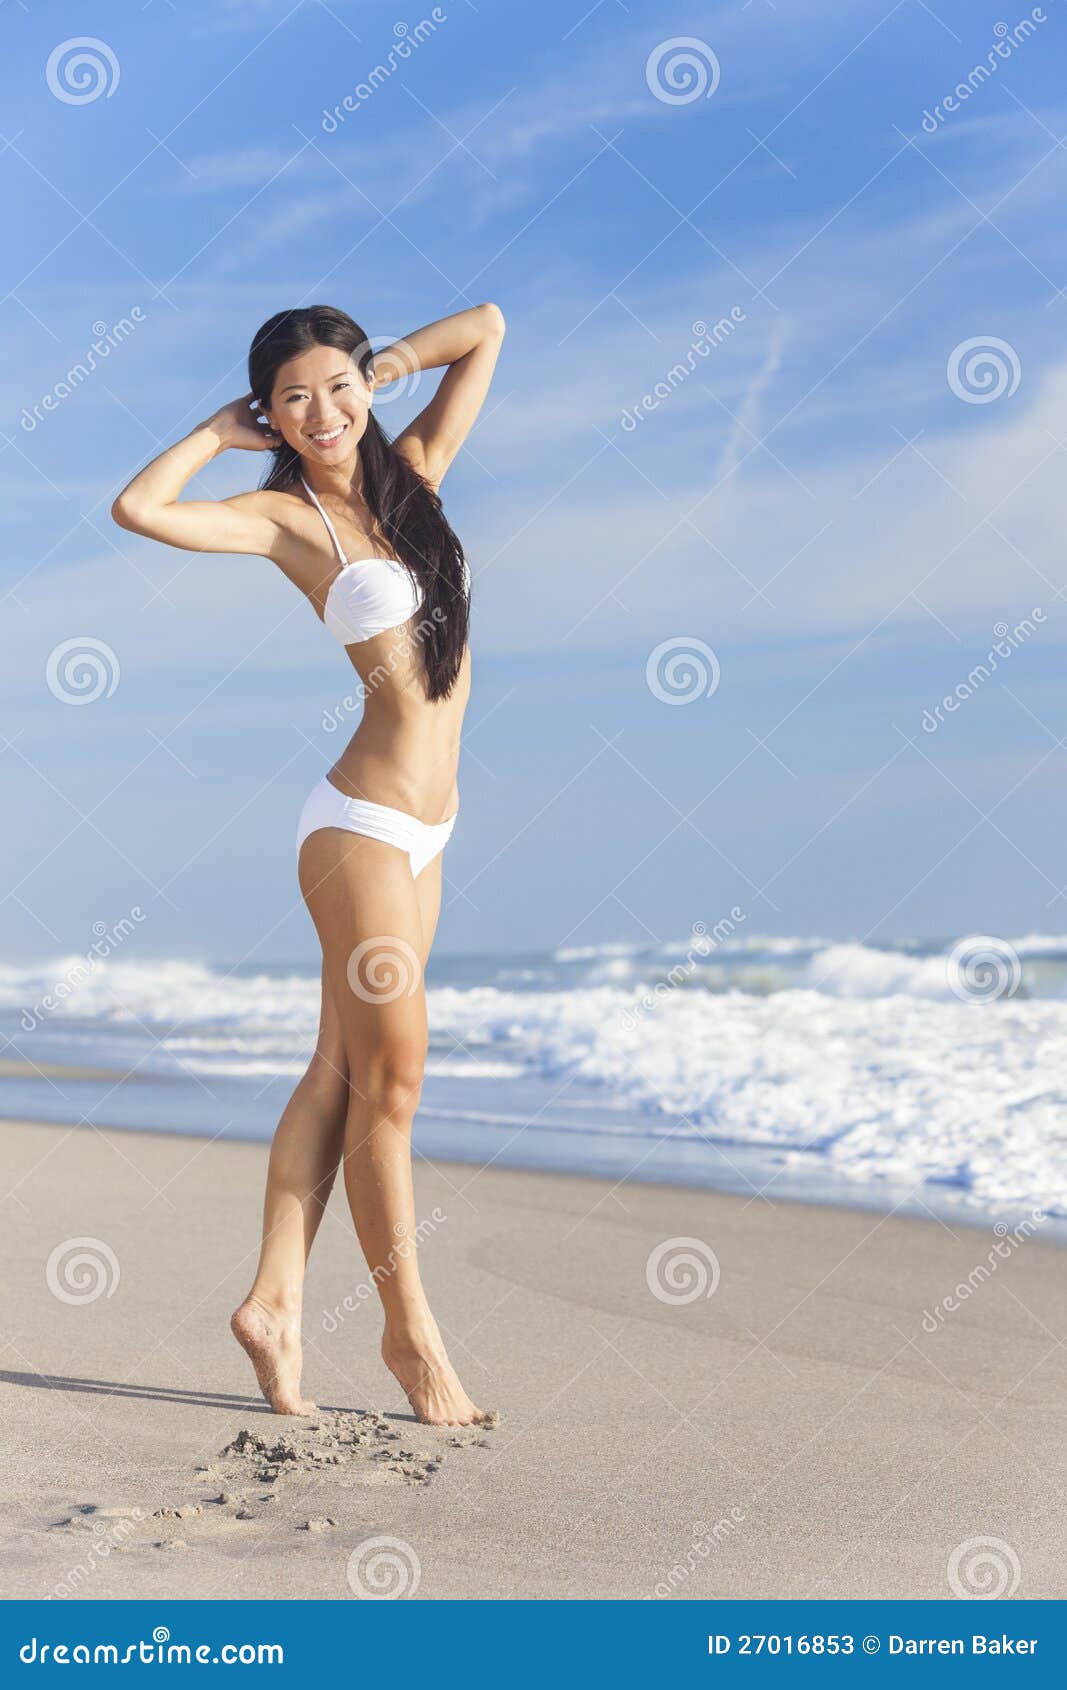 asian girl nudist beach xxx photo